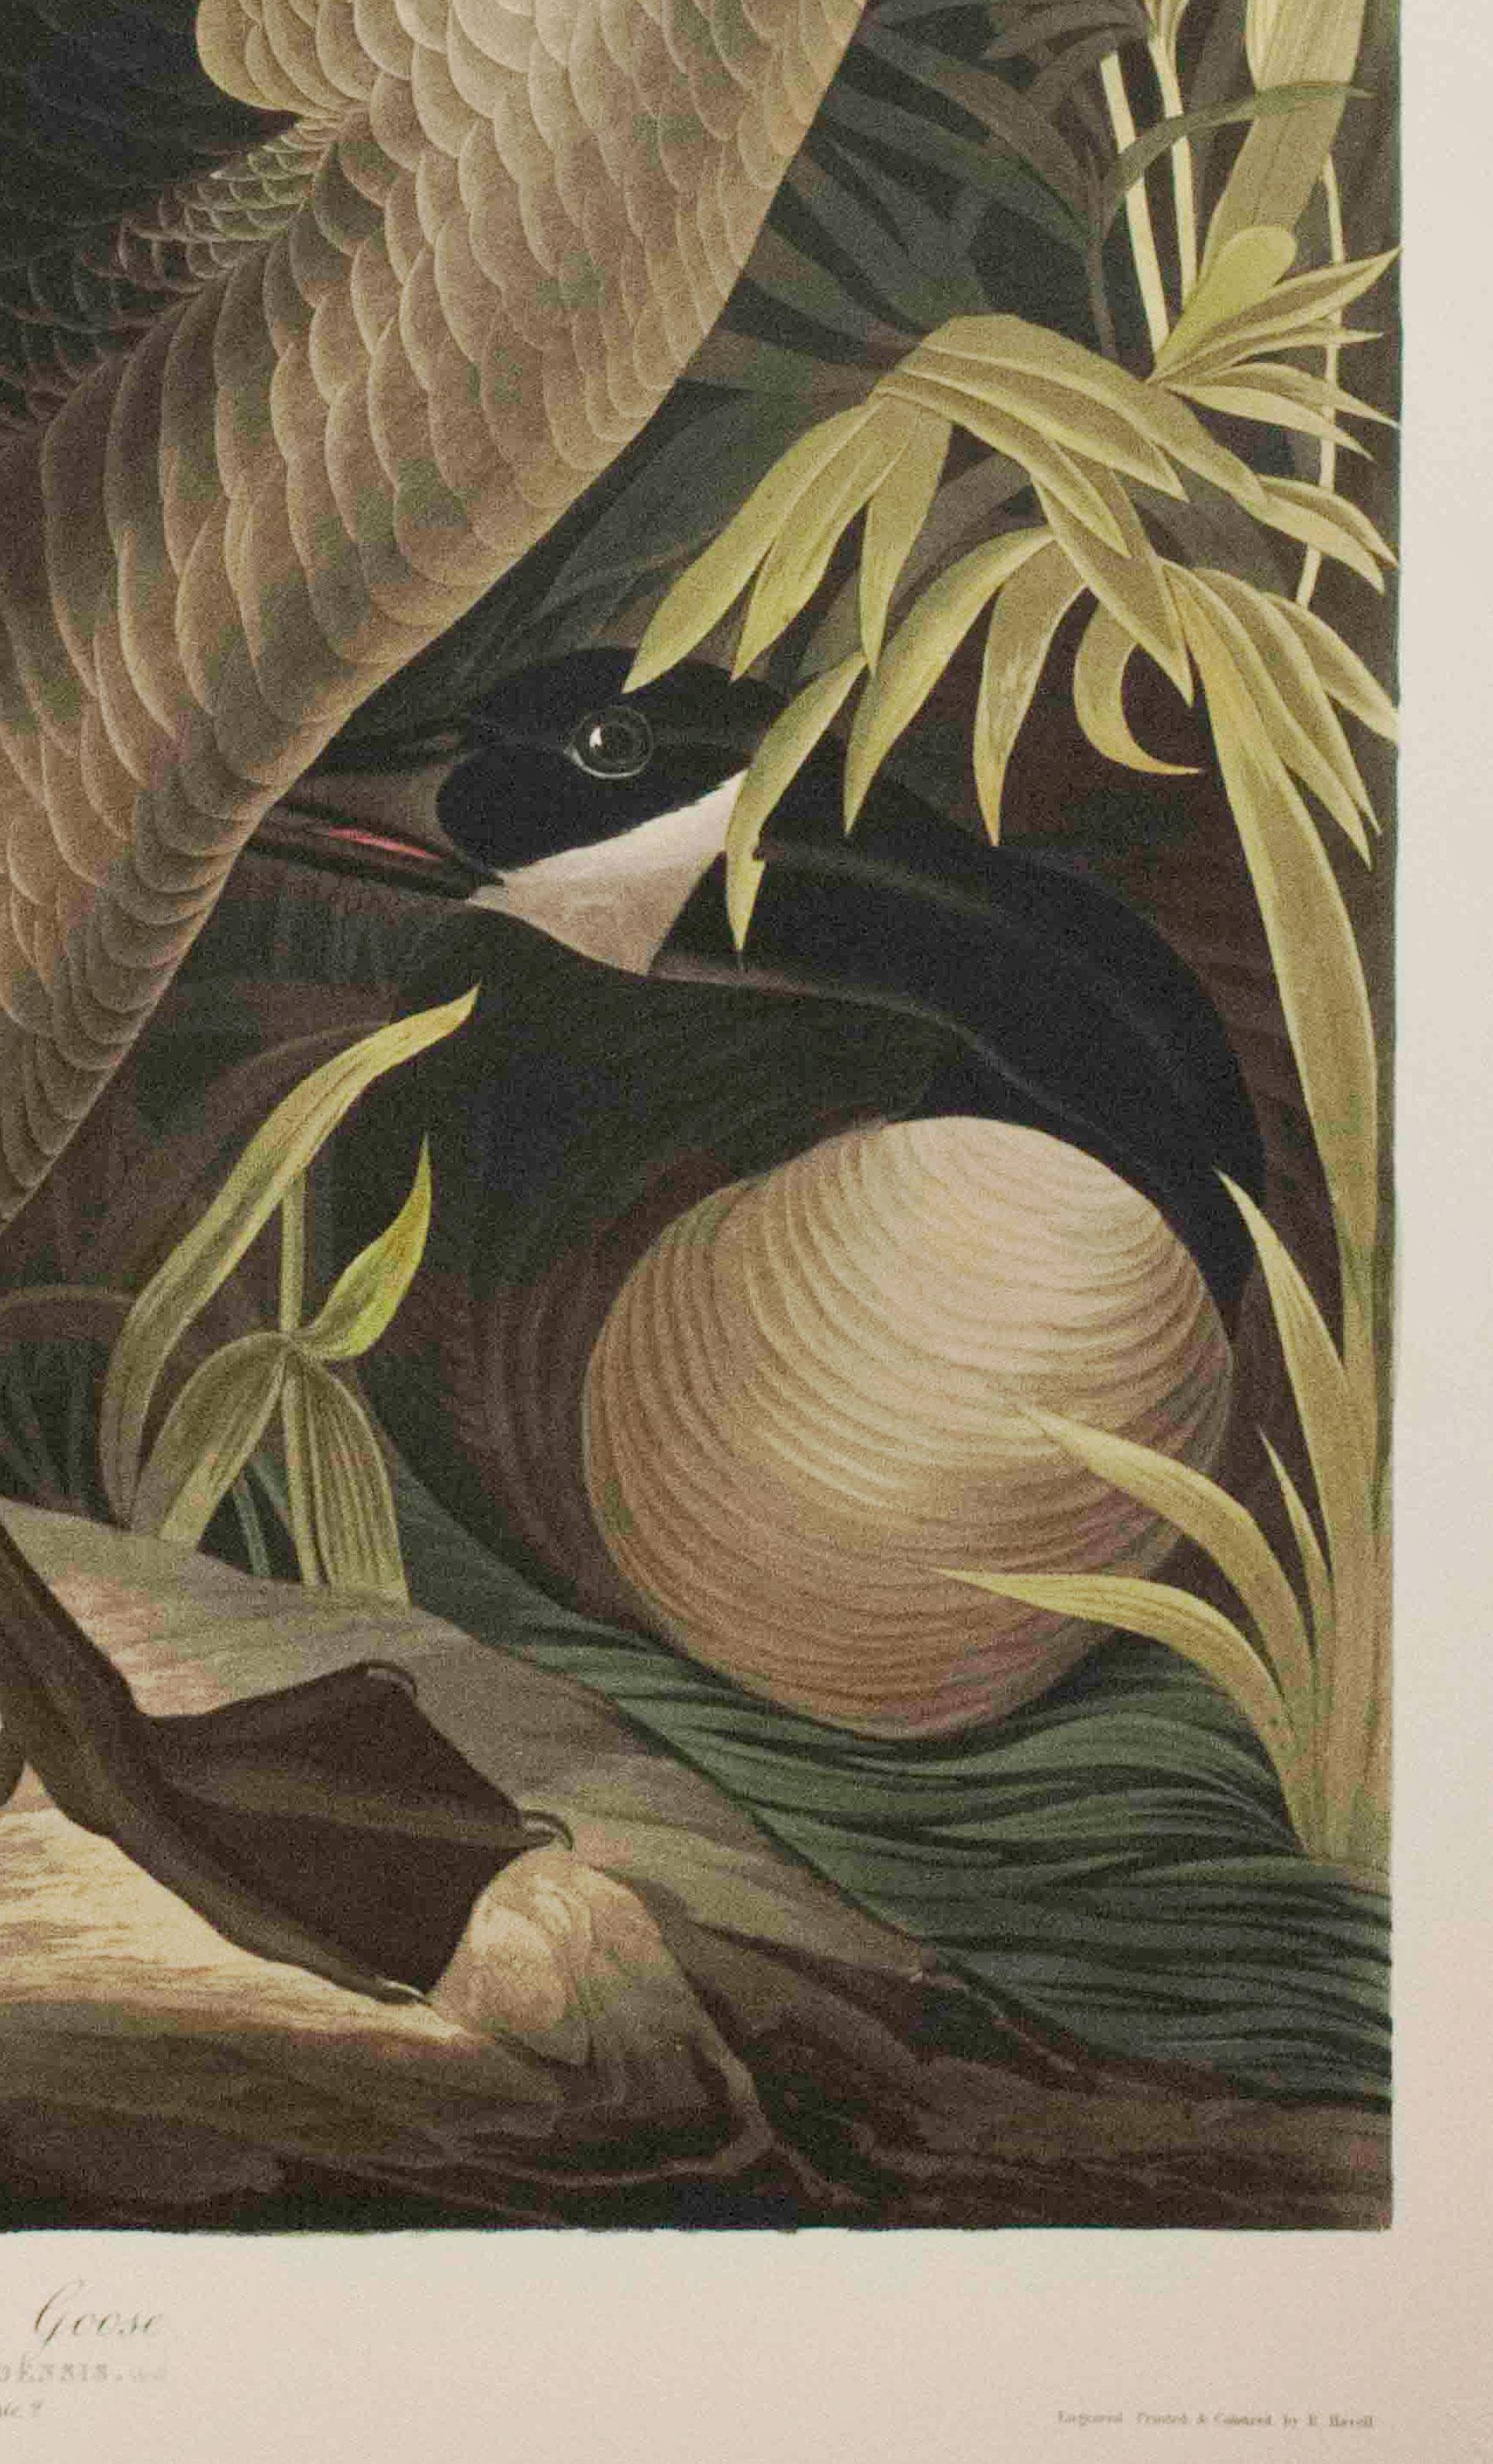 Cette pièce est une lithographie tirée d'un portfolio des cinquante meilleures aquarelles d'Audubon publié par Joel Oppenheimer et le Field Museum en 1999. Cette collection comprend cinquante des meilleures aquarelles d'oiseaux de John James Audubon